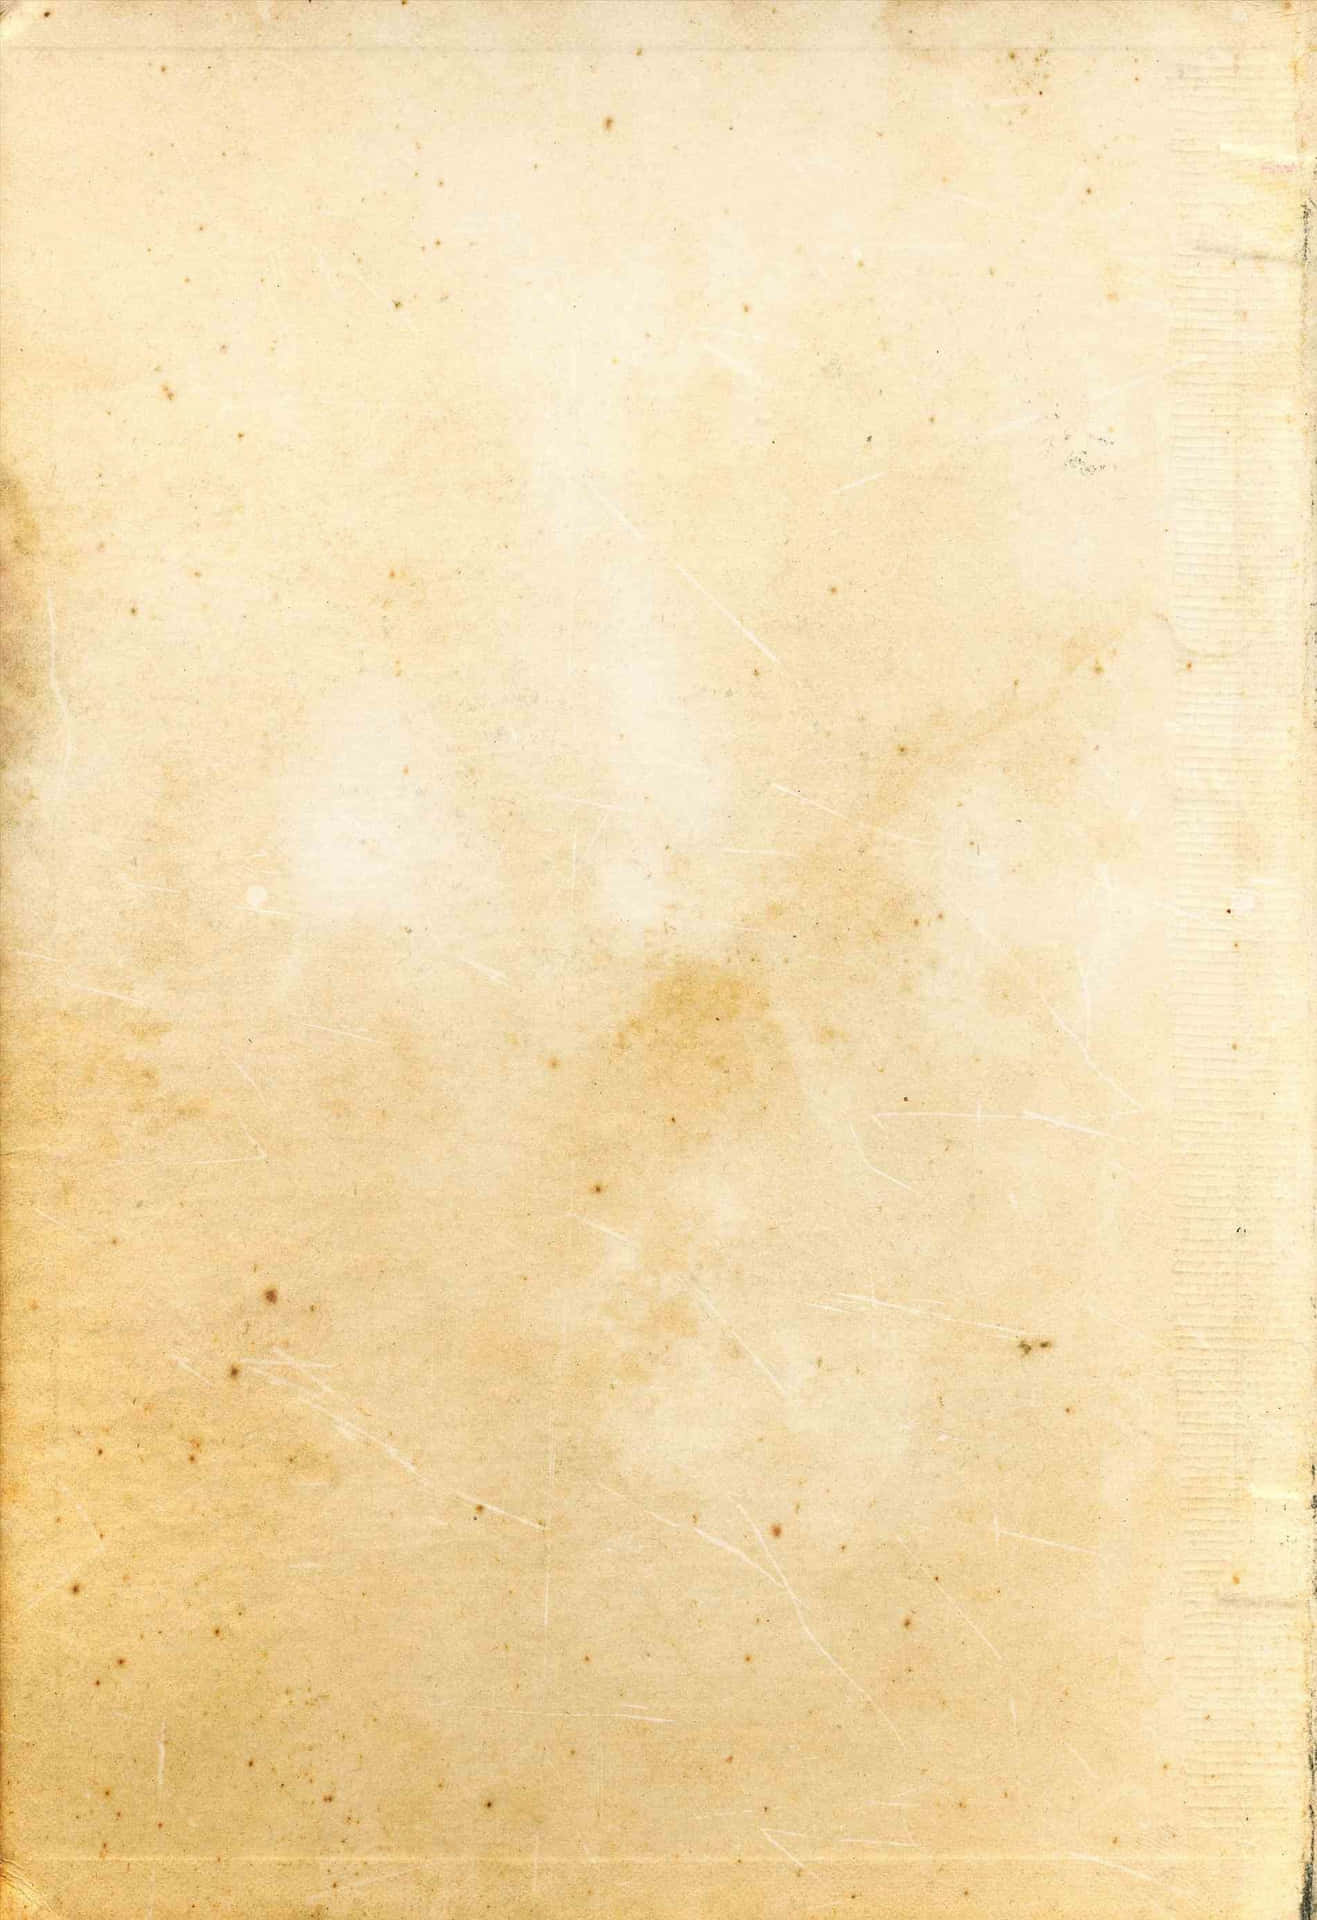 Immaginedi Ritratto Con Texture Di Carta Vecchia Bianca E Marrone.